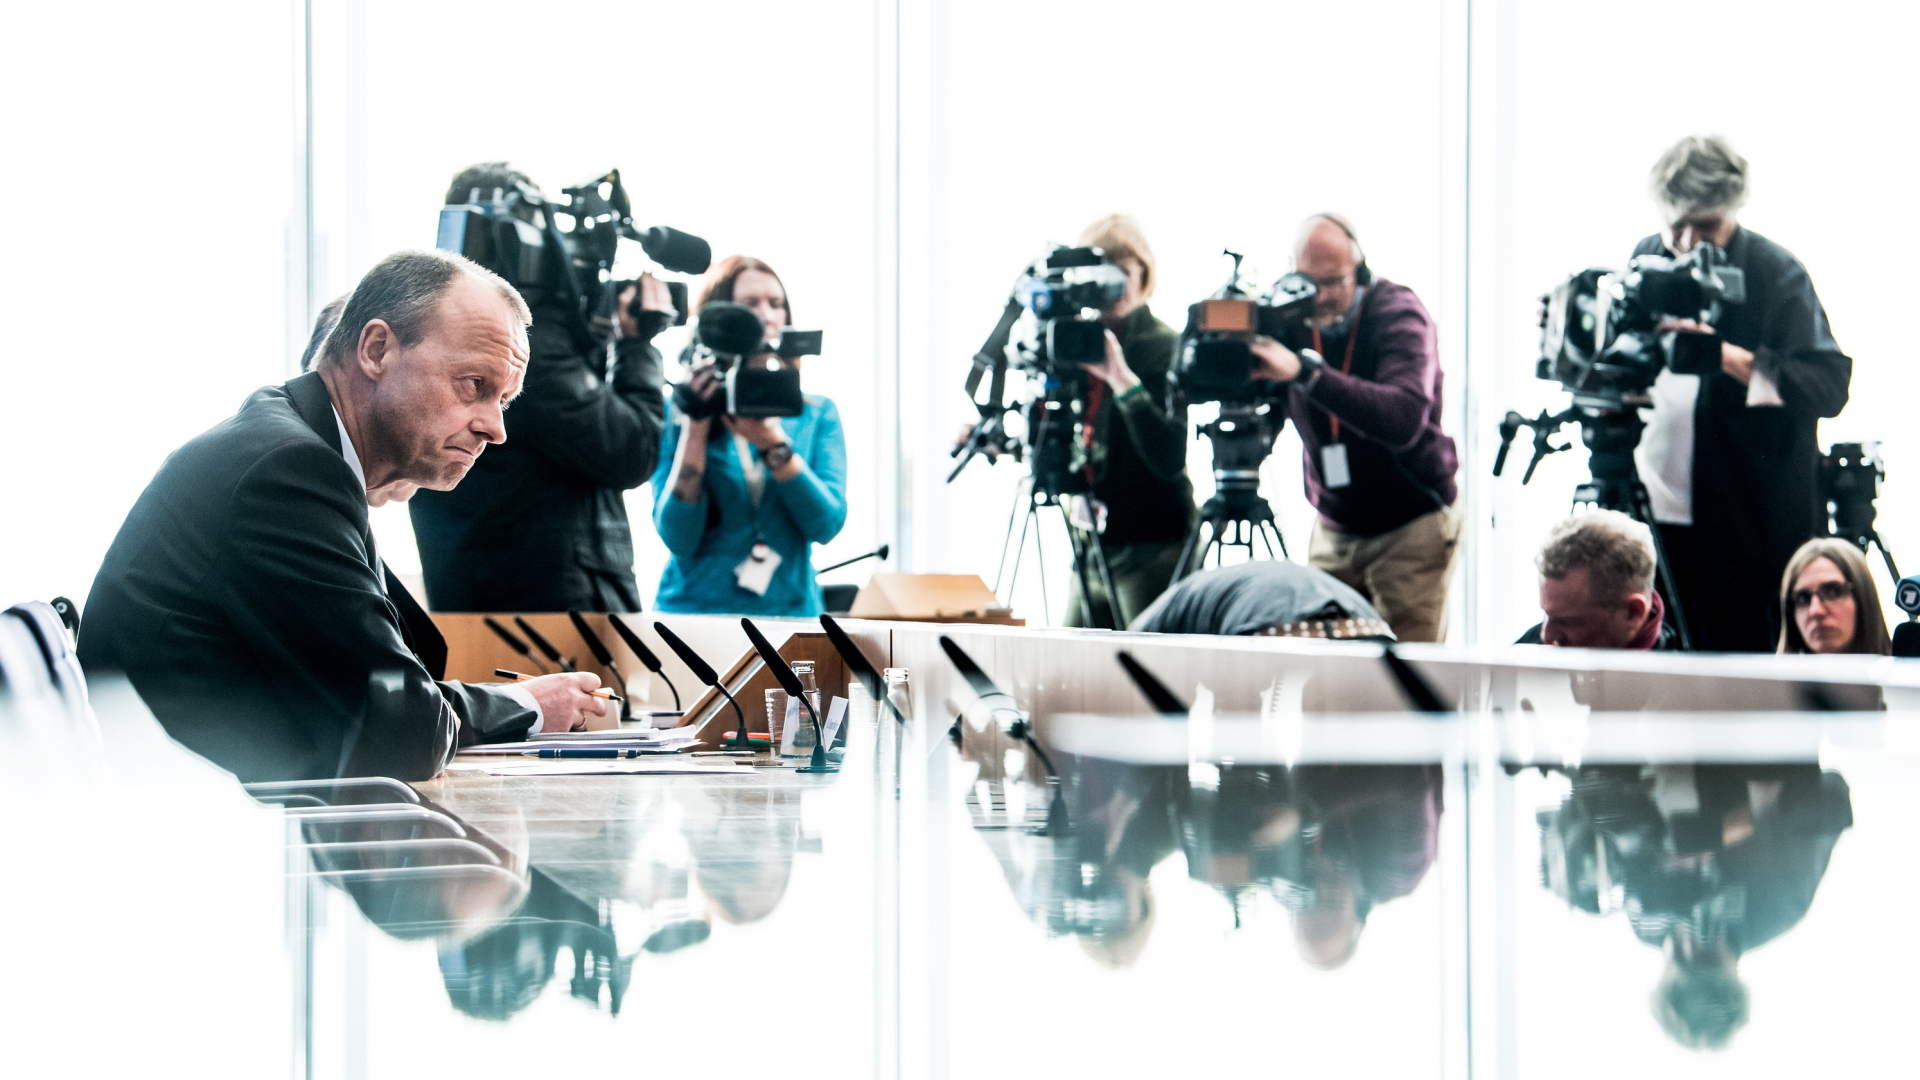 Friedrich Merz auf seiner Pressekonferenz | Bildquelle: dpa